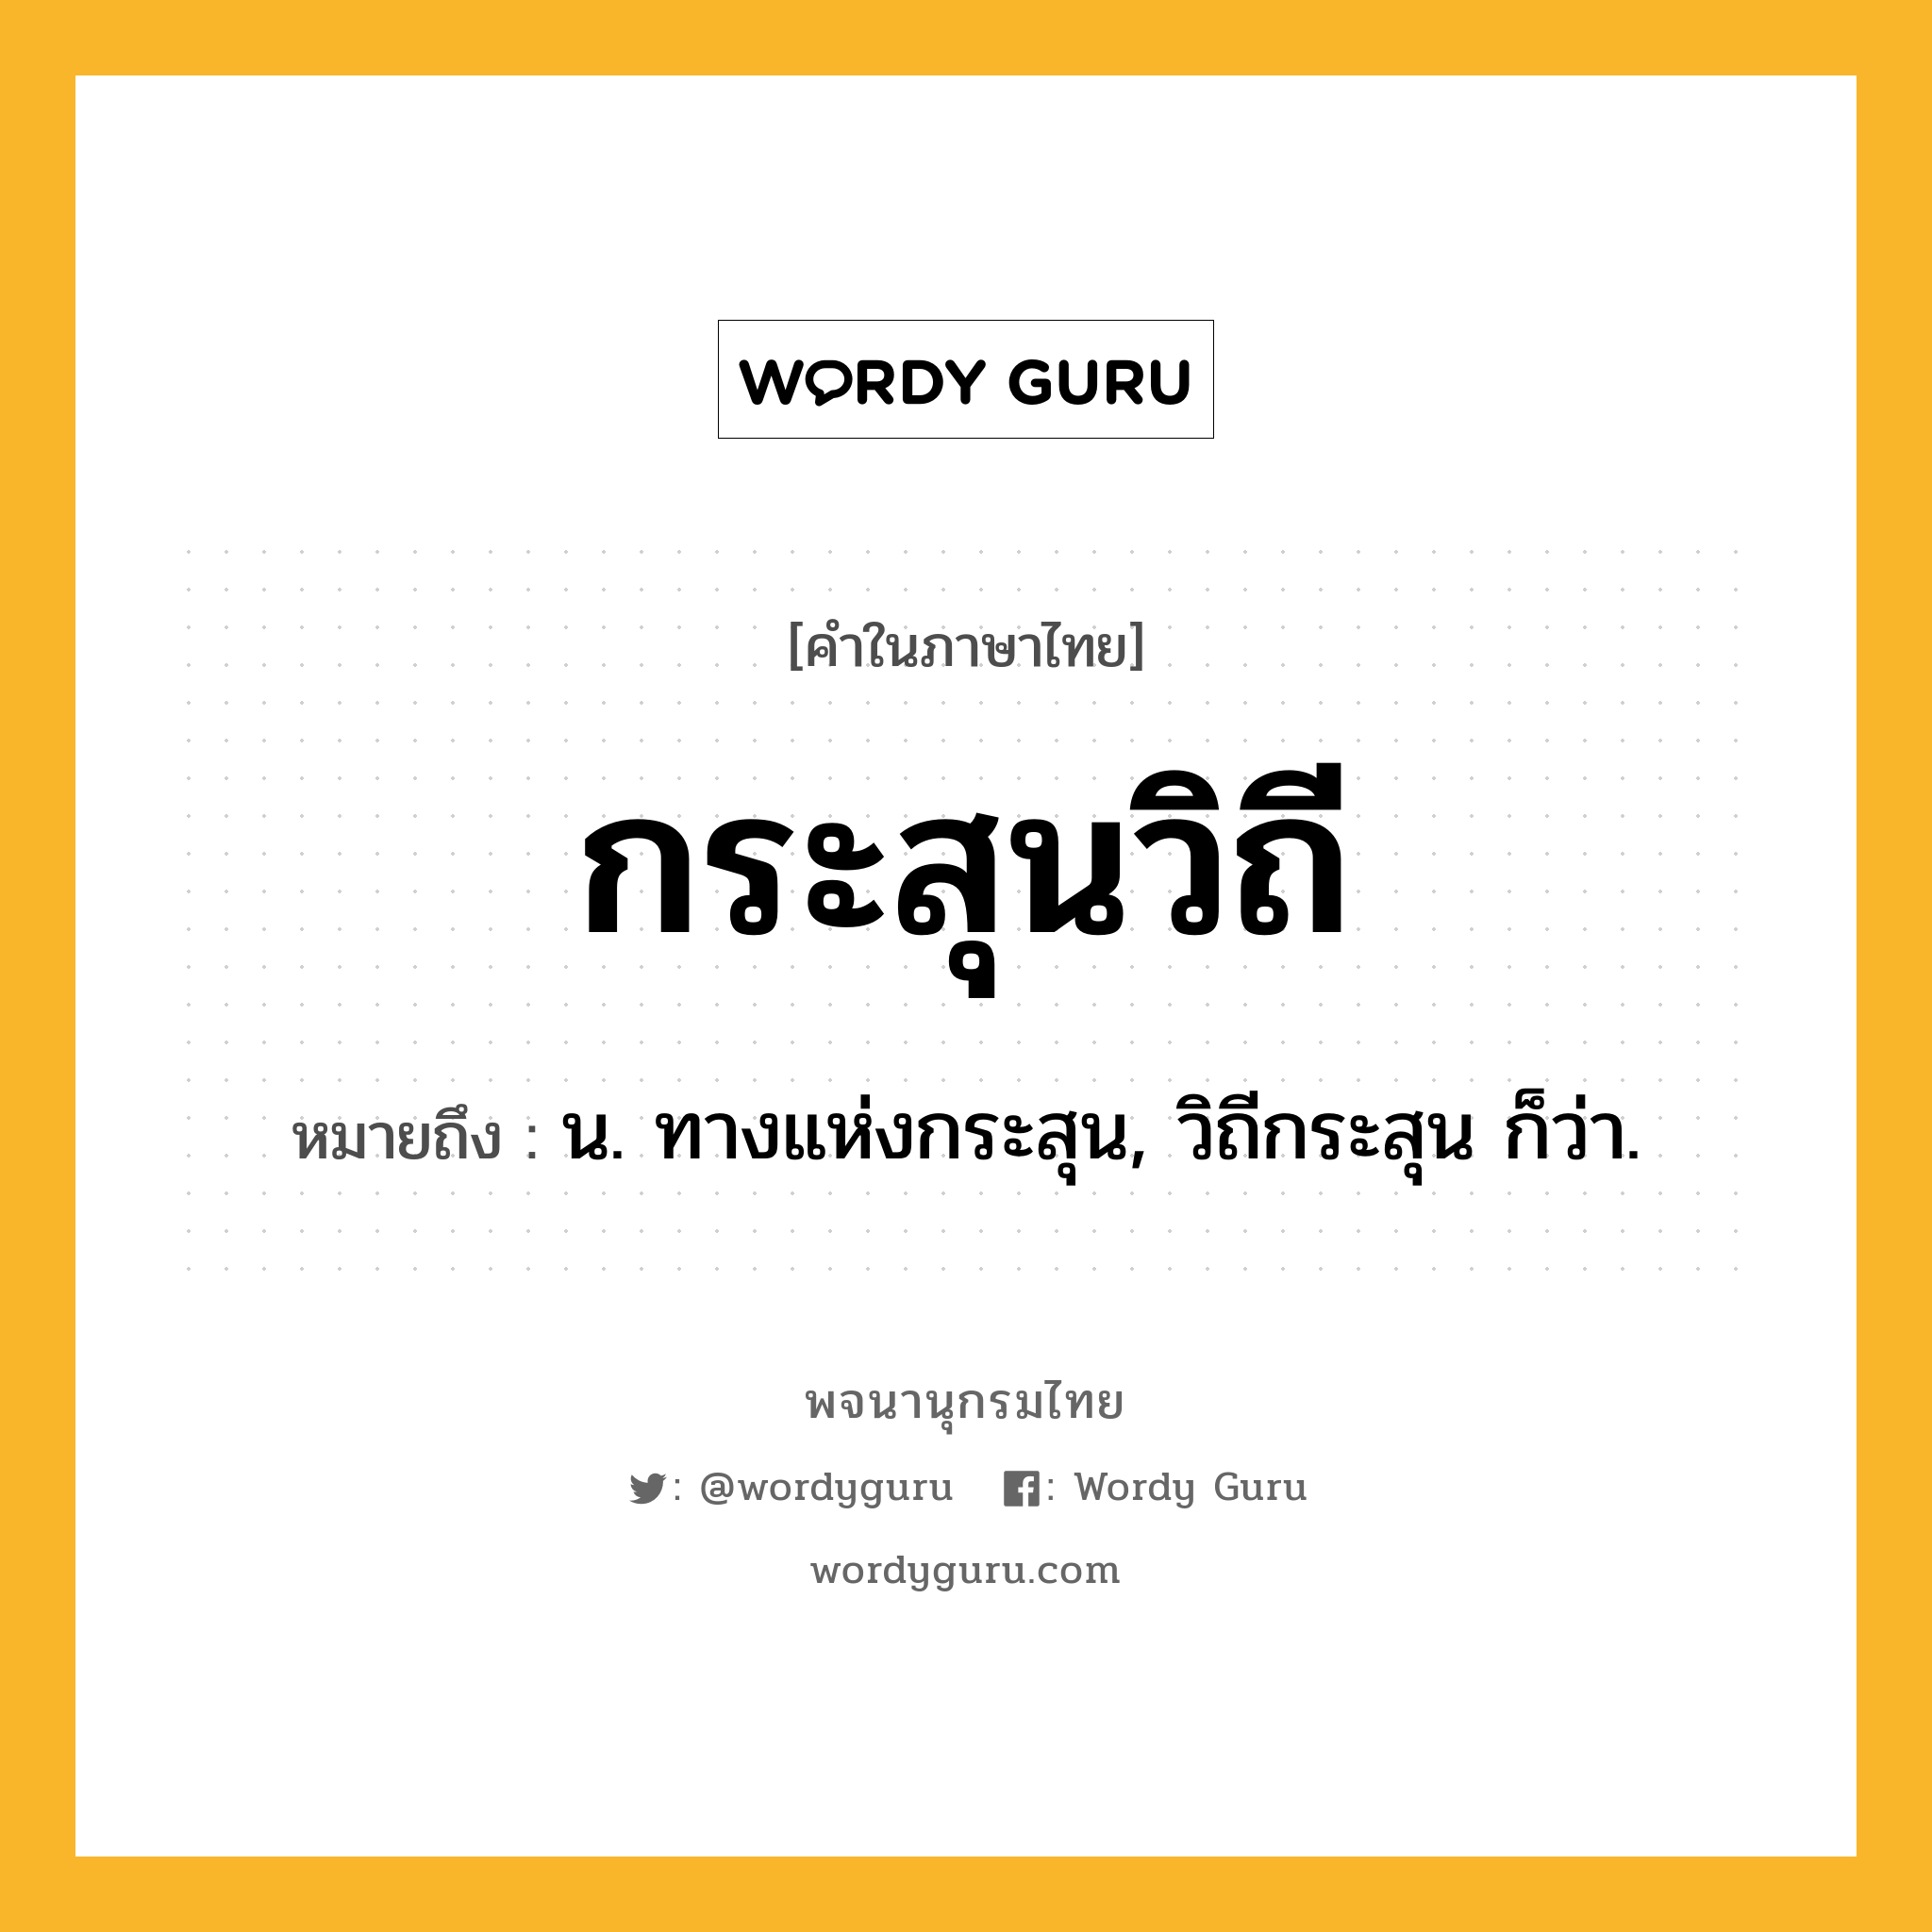 กระสุนวิถี ความหมาย หมายถึงอะไร?, คำในภาษาไทย กระสุนวิถี หมายถึง น. ทางแห่งกระสุน, วิถีกระสุน ก็ว่า.